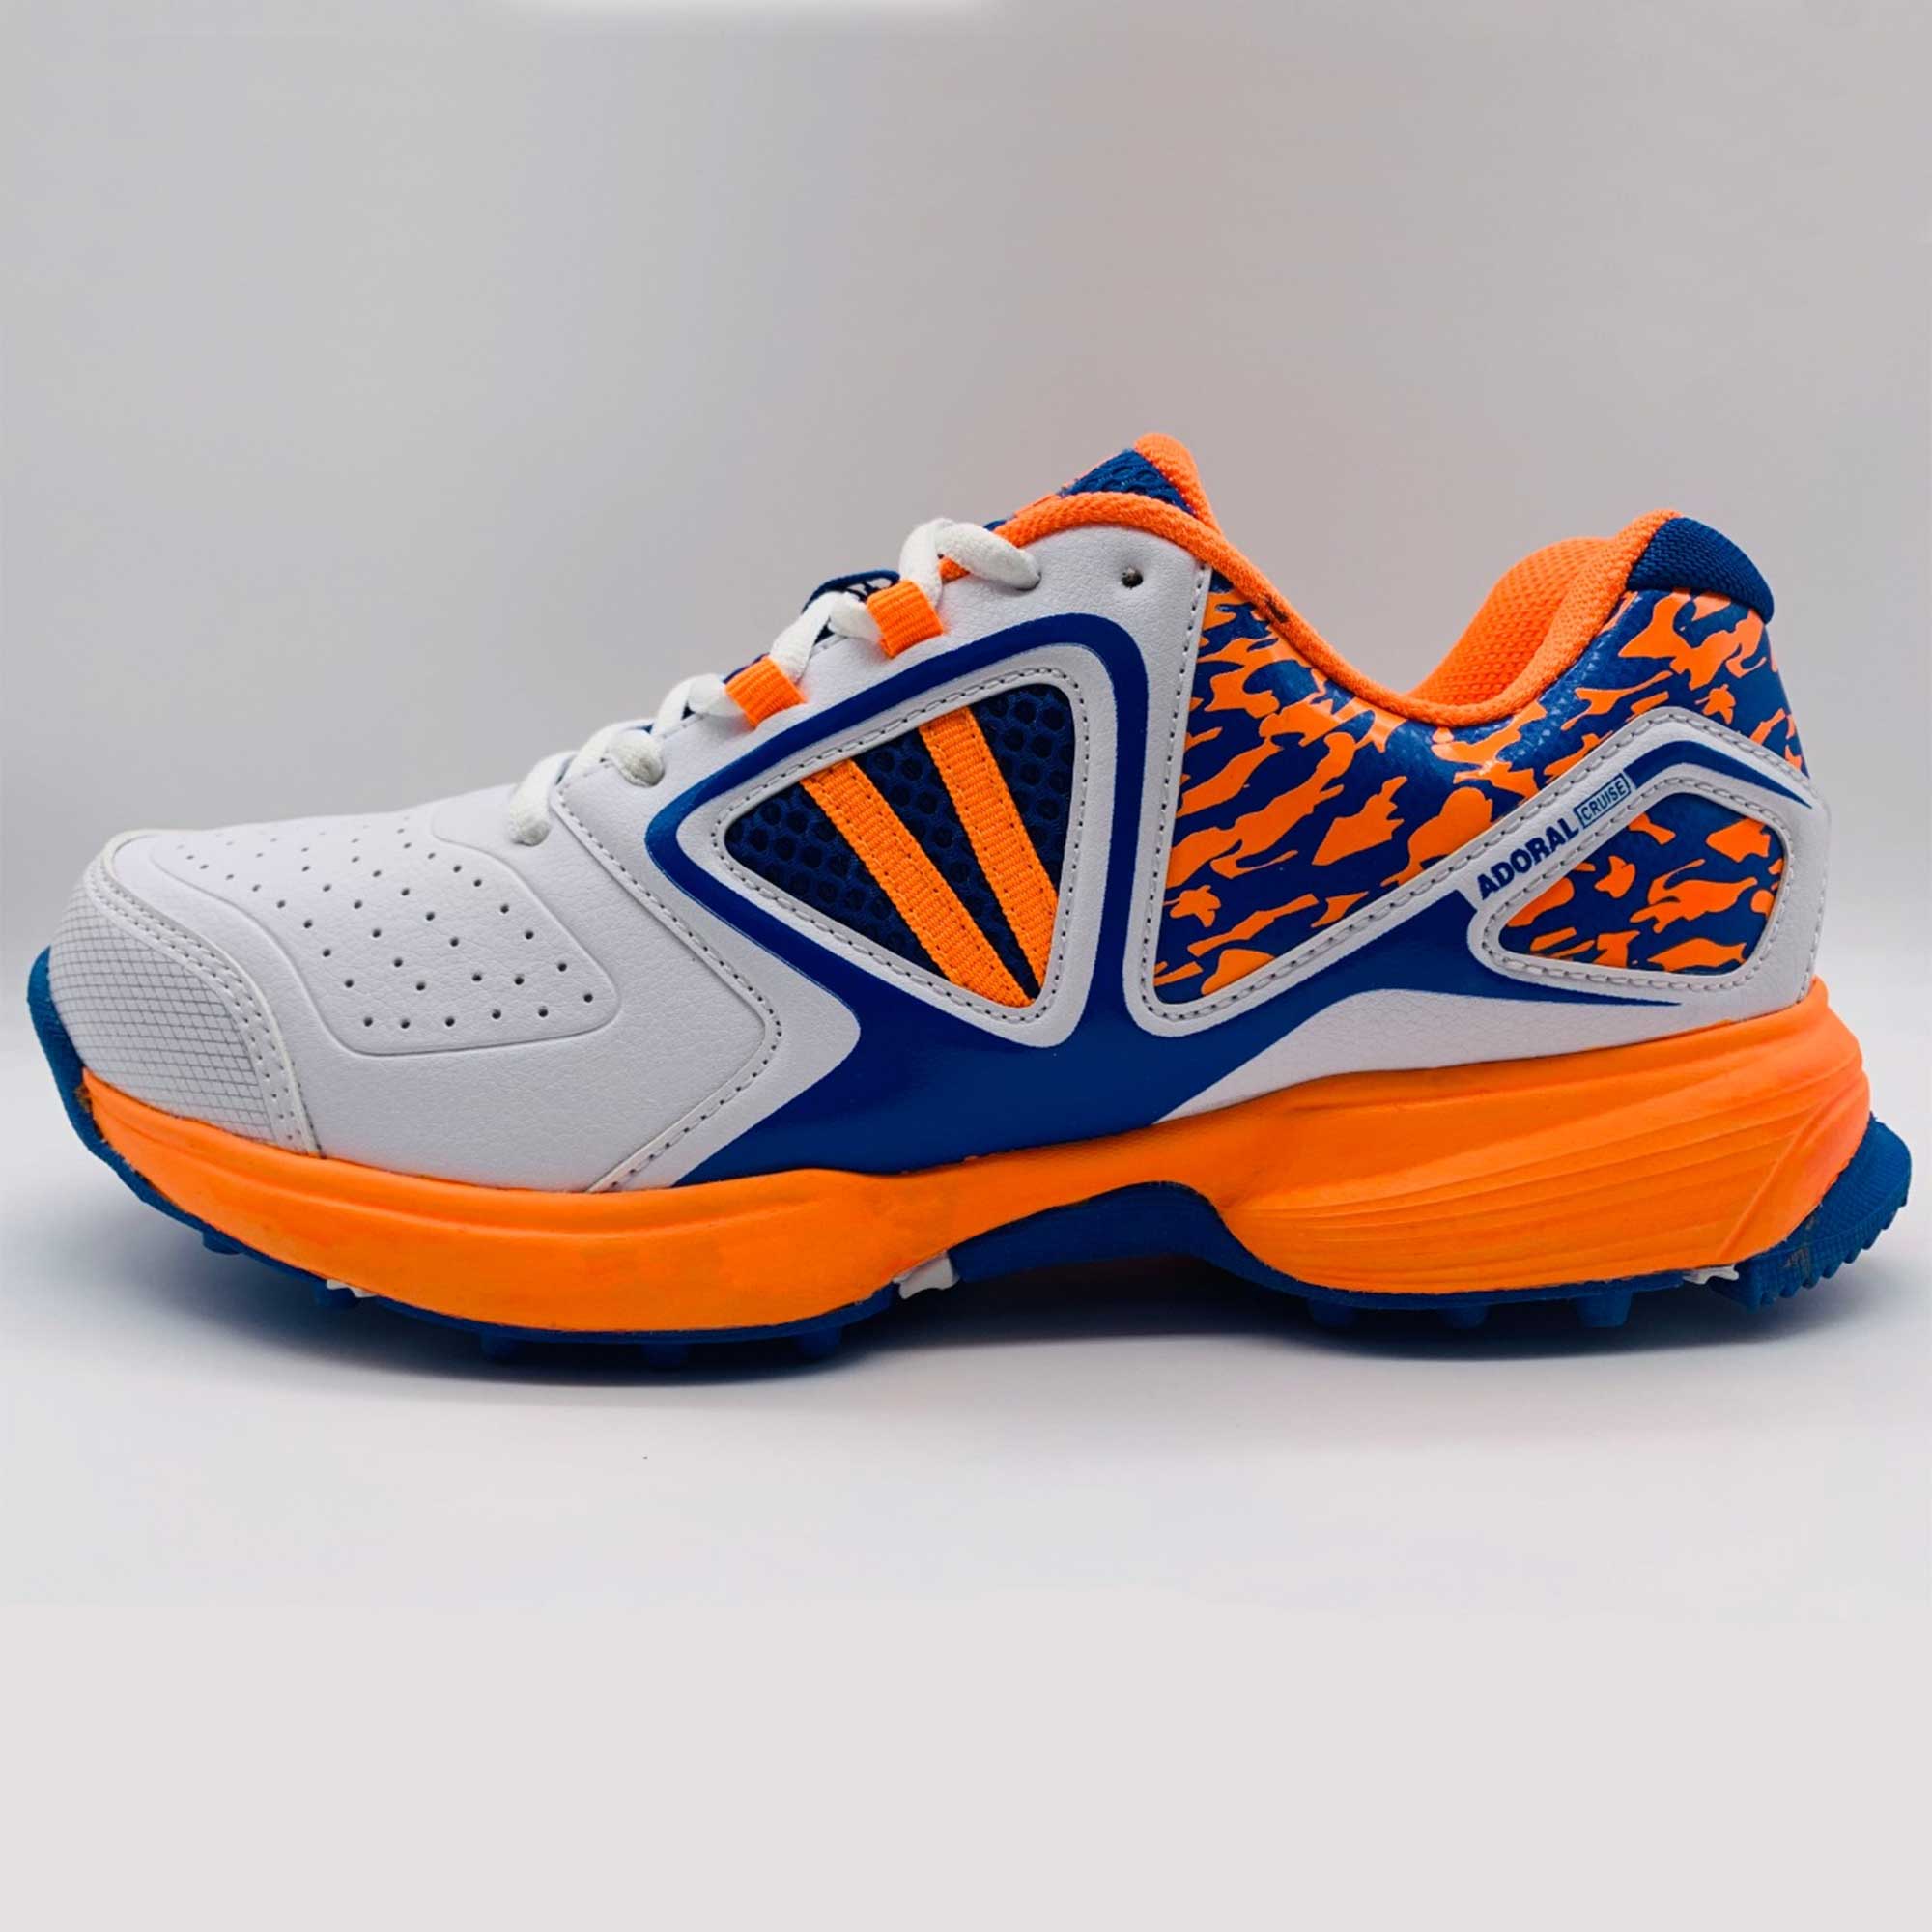 Adoral Cruise Cricket Shoes For Men - Orange/Blue : Buy Online At Best ...